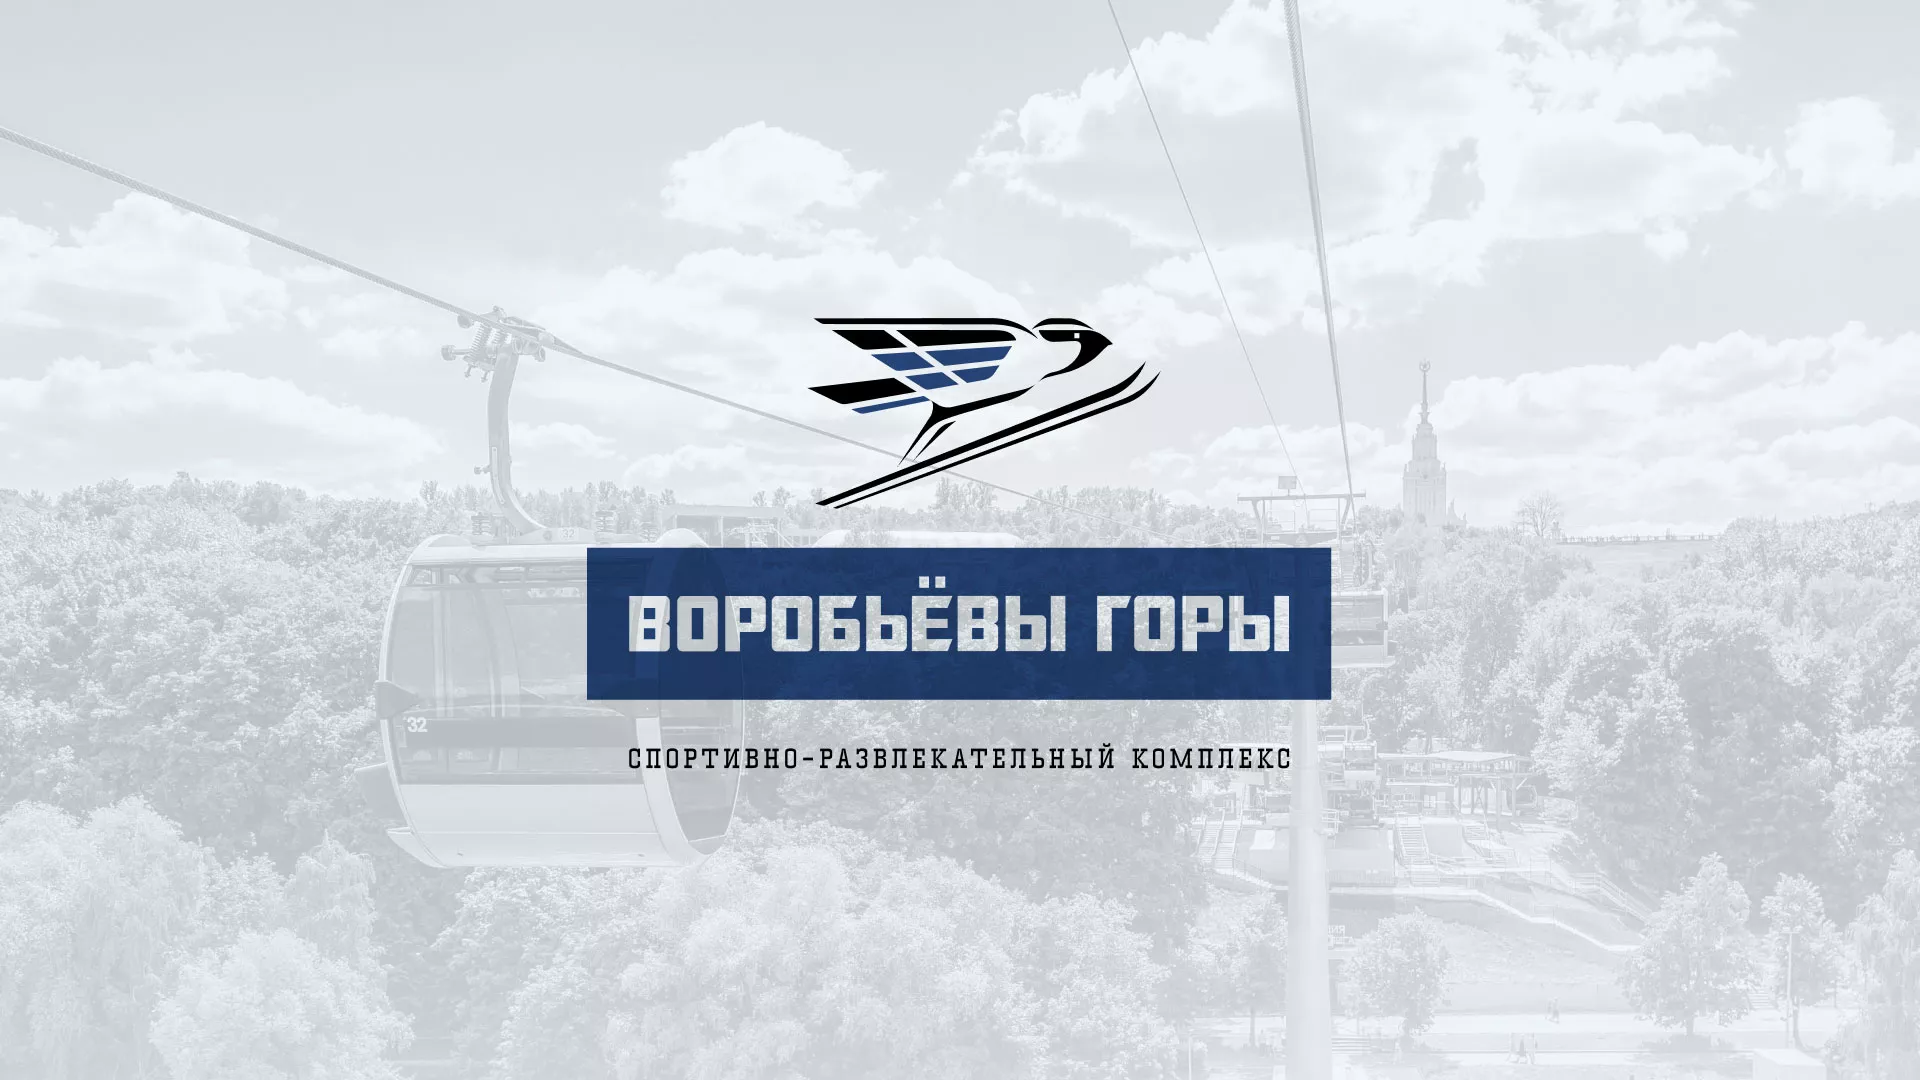 Разработка сайта в Касимове для спортивно-развлекательного комплекса «Воробьёвы горы»